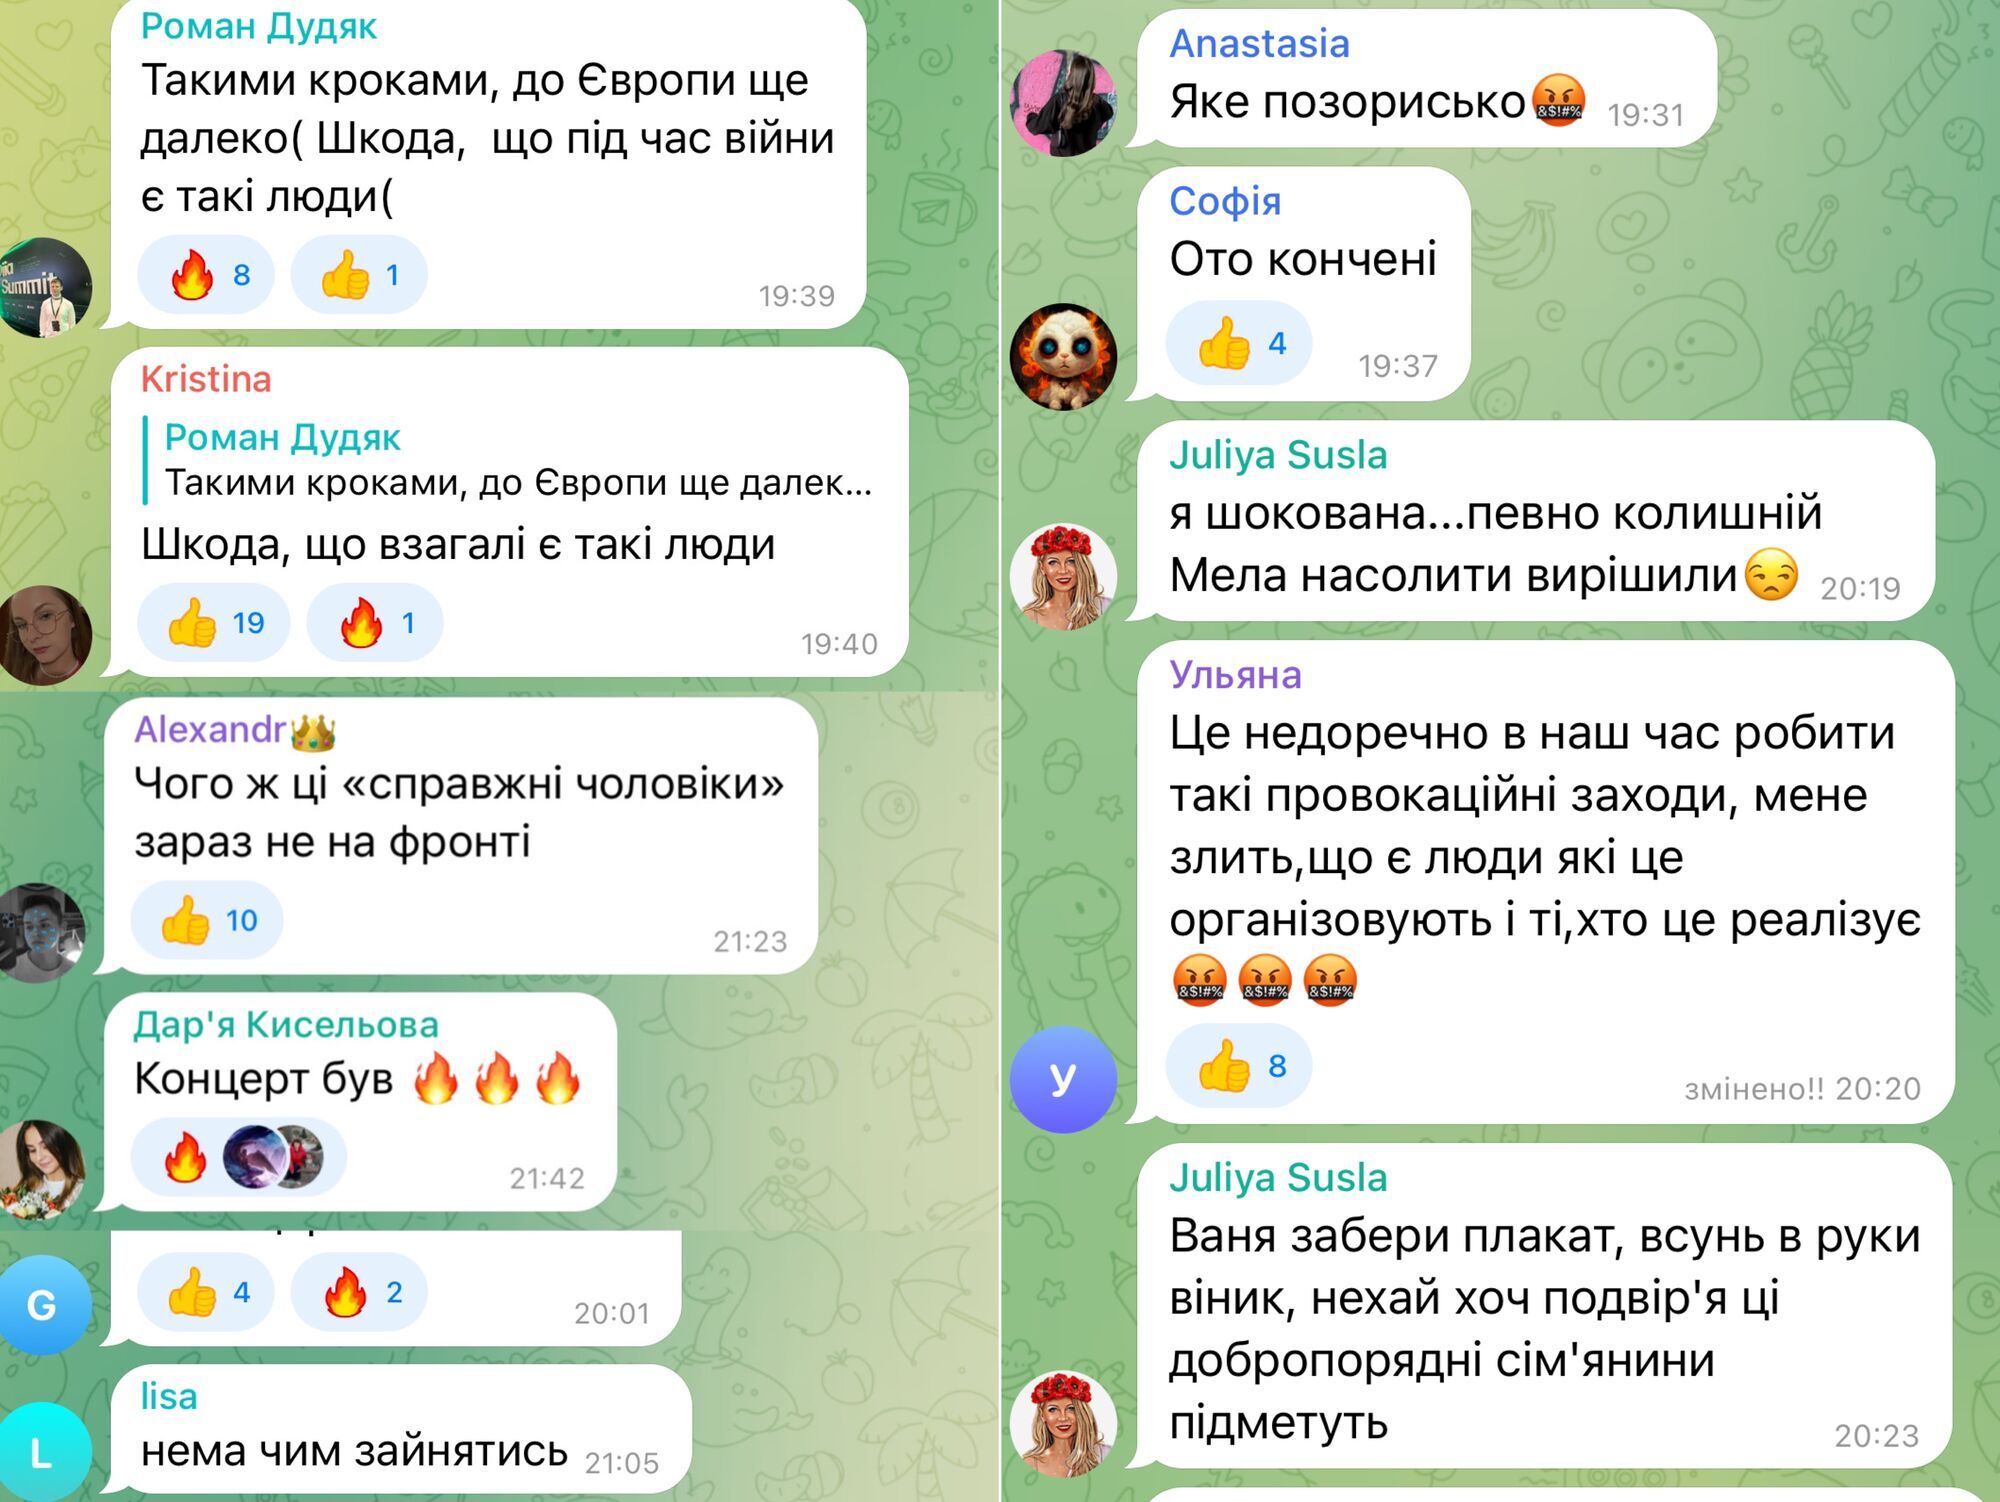 У входа на концерт MELOVIN в Киеве "титушки" устроили митинг против ЛГБТ: в сети отреагировали. Видео